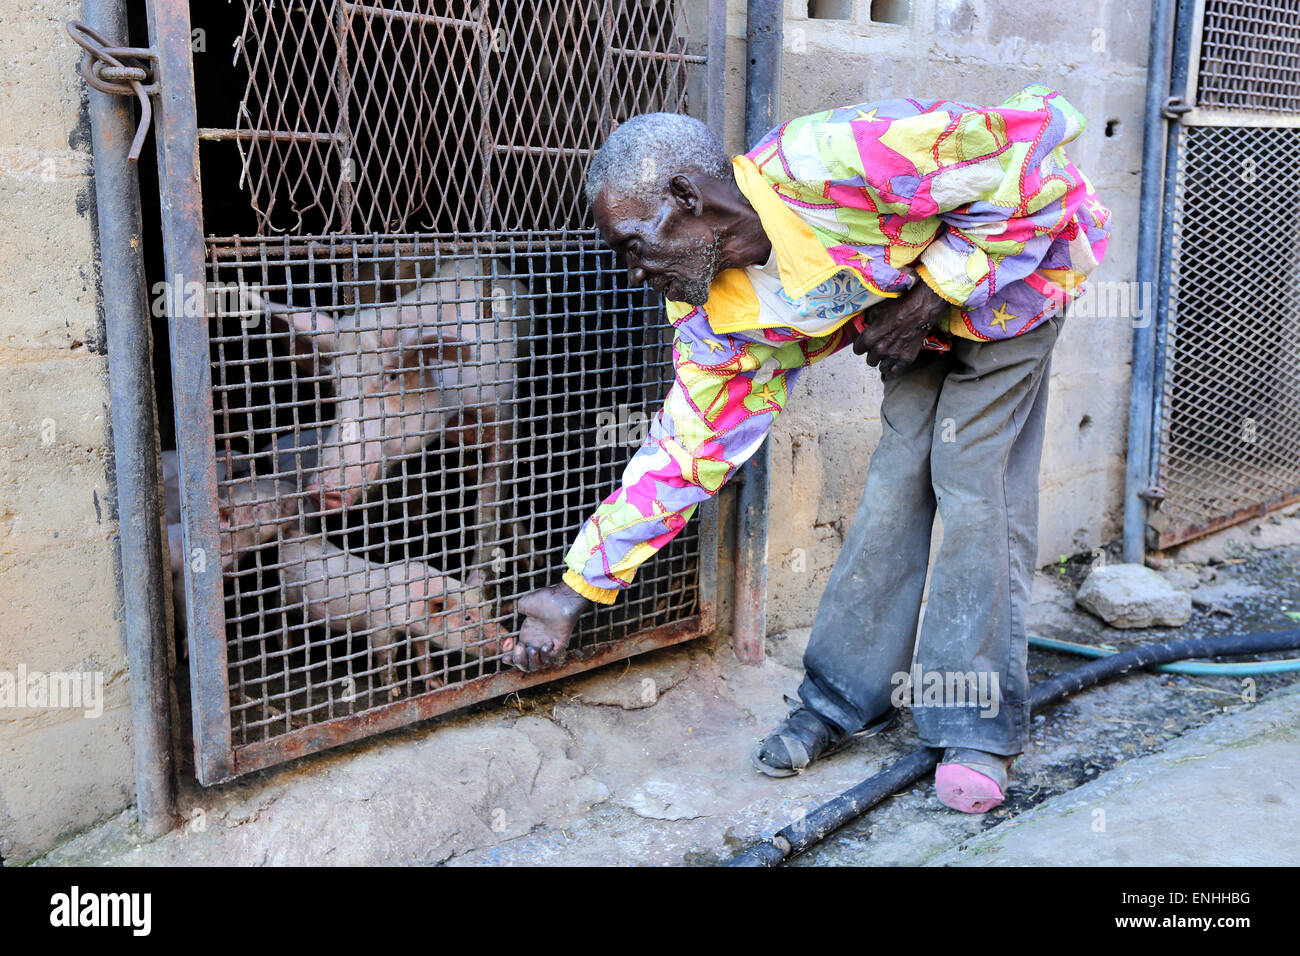 Imprenditore avendo cura di poco i suinetti nel porcile. Ibenga, Zambia, Africa Foto Stock